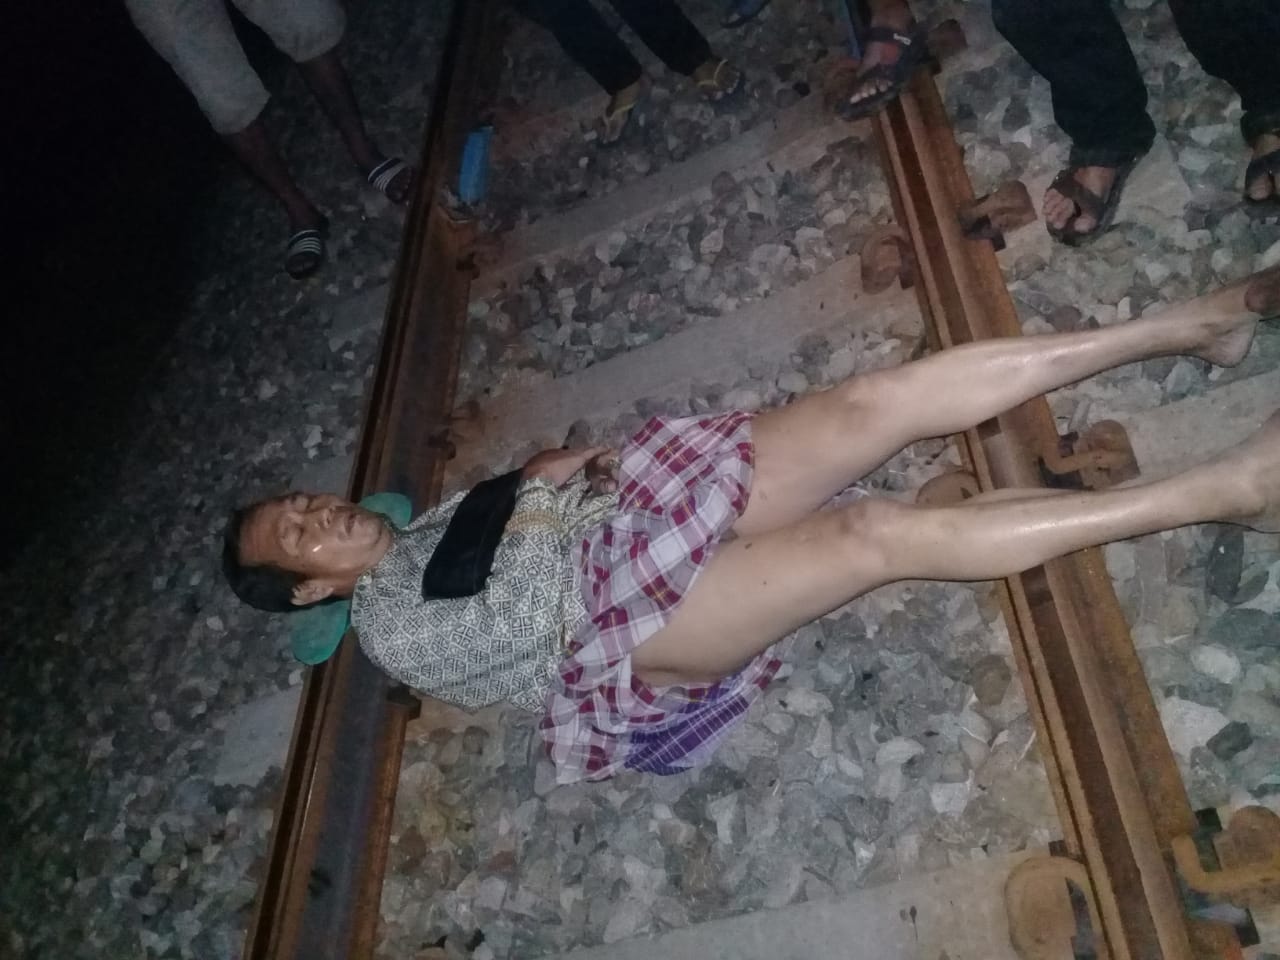 Pria paruhbaya ditemukan tidur terlentang di rel kereta api. (Foto: Istimewa)